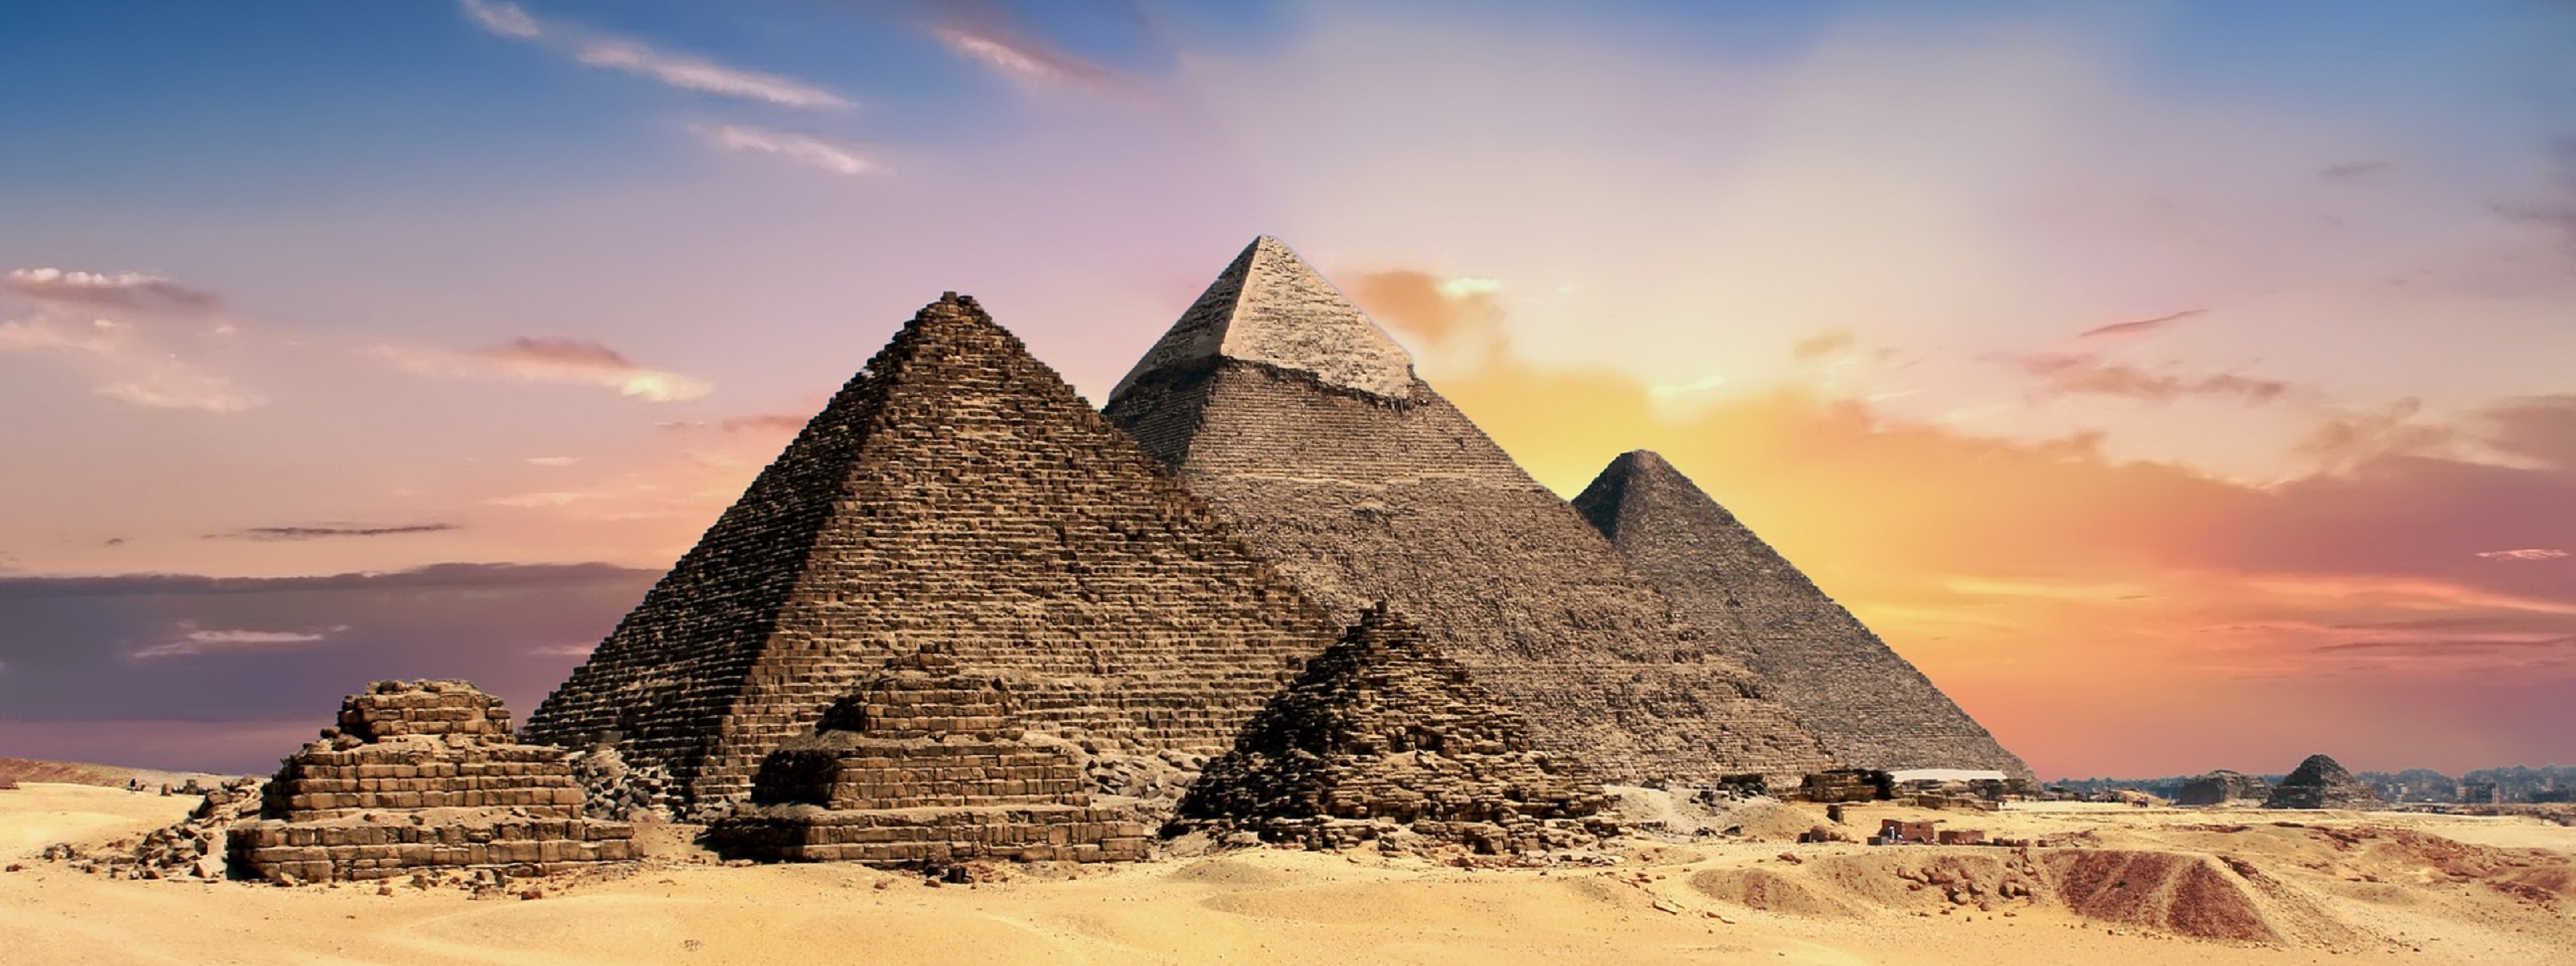 Piramidi di Giza, scoperto cimitero di 4500 anni fa